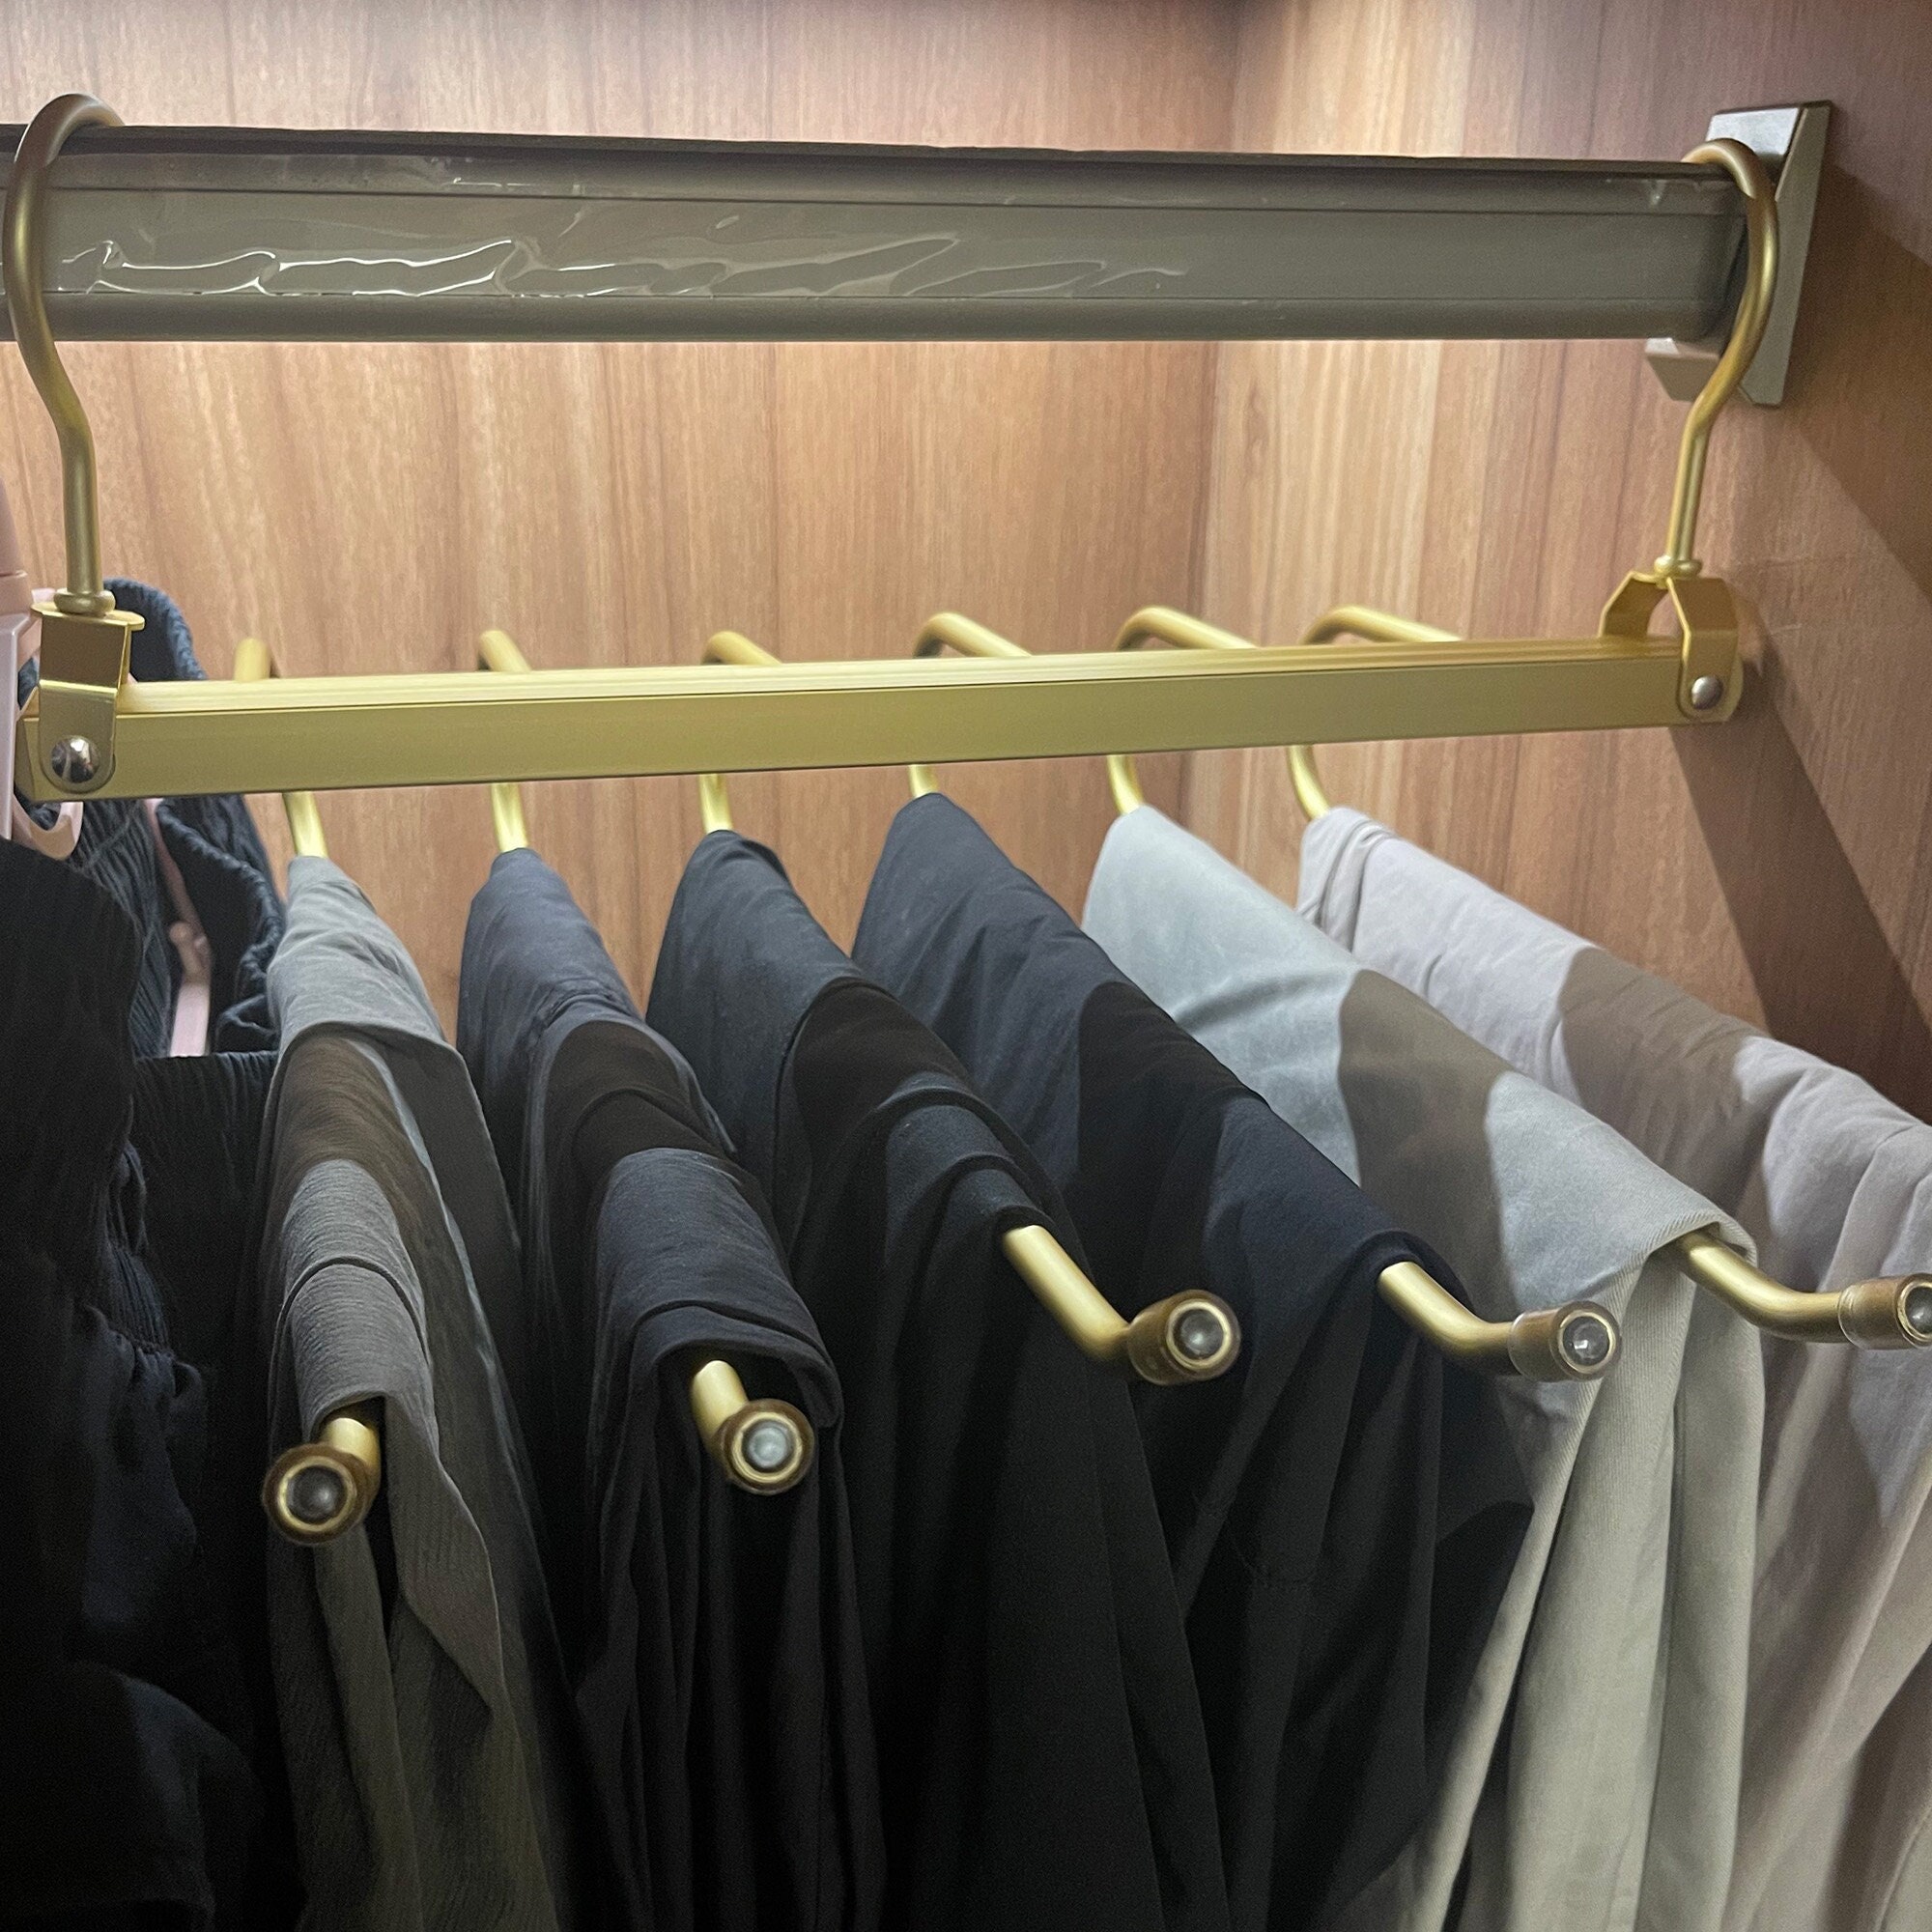 Space Saving Nonslip Suit Hangers, Closet Accessories